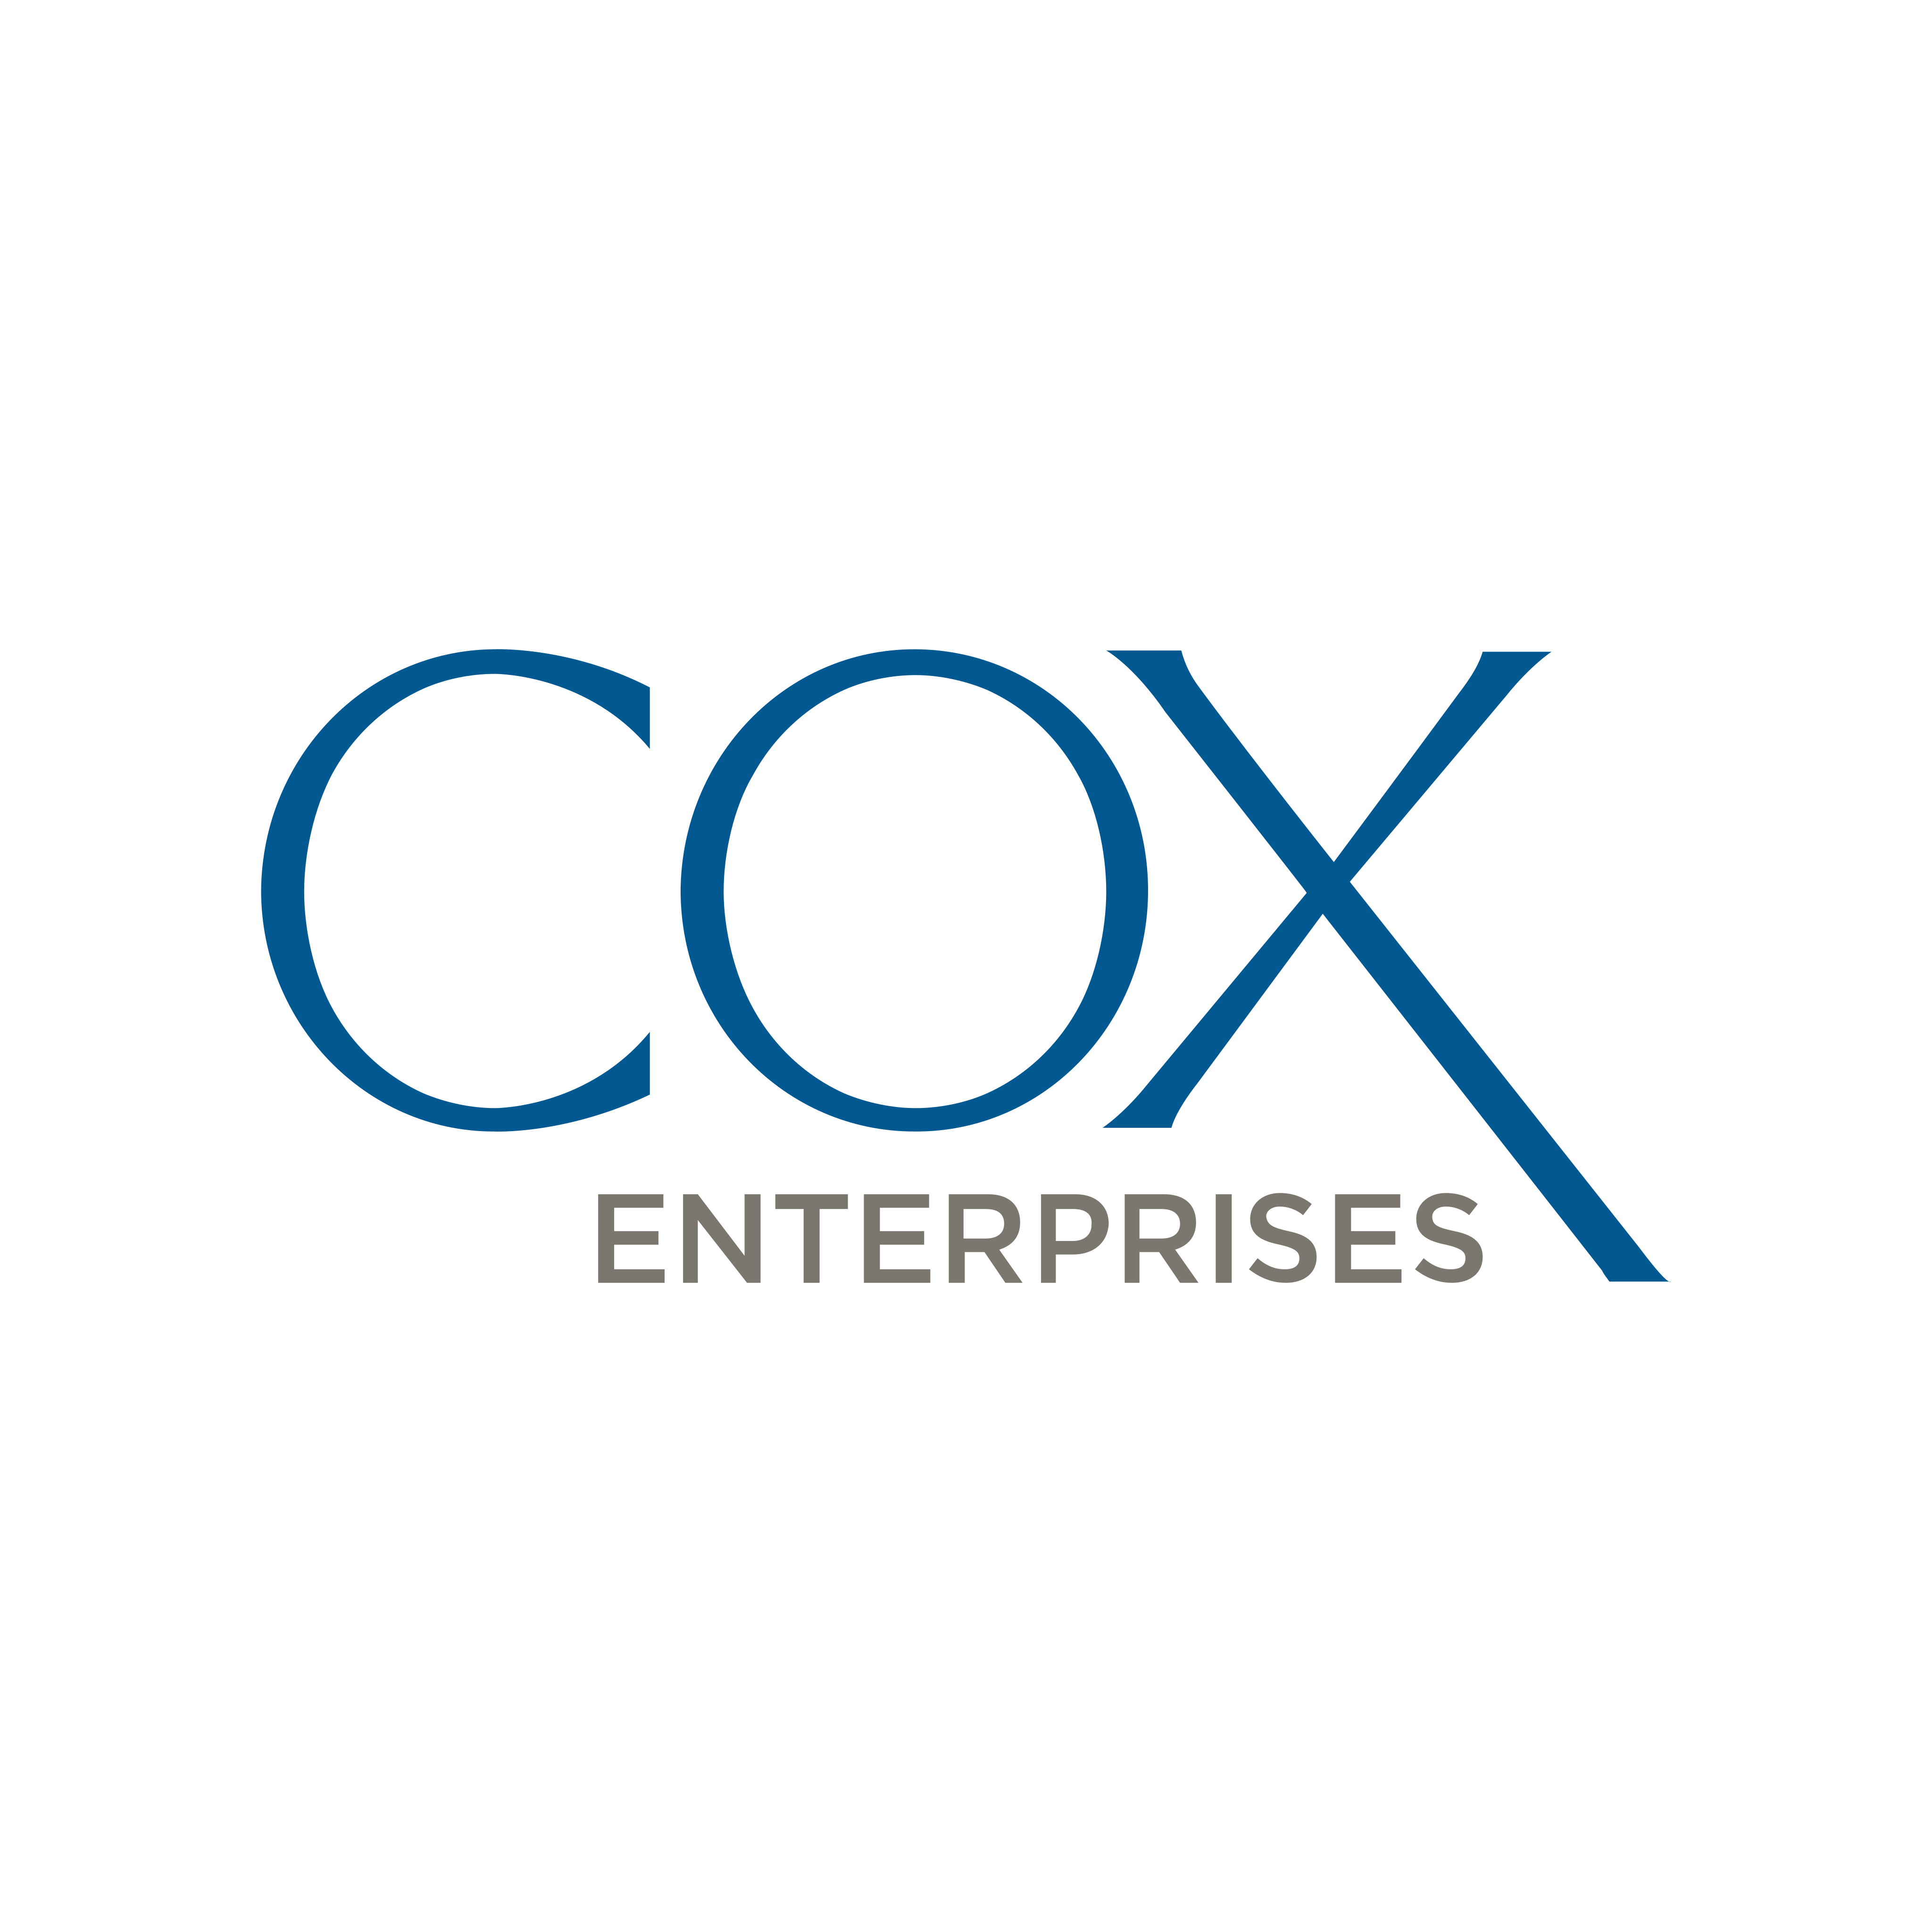 cox enterprises logo 0 - Cox Enterprises Logo